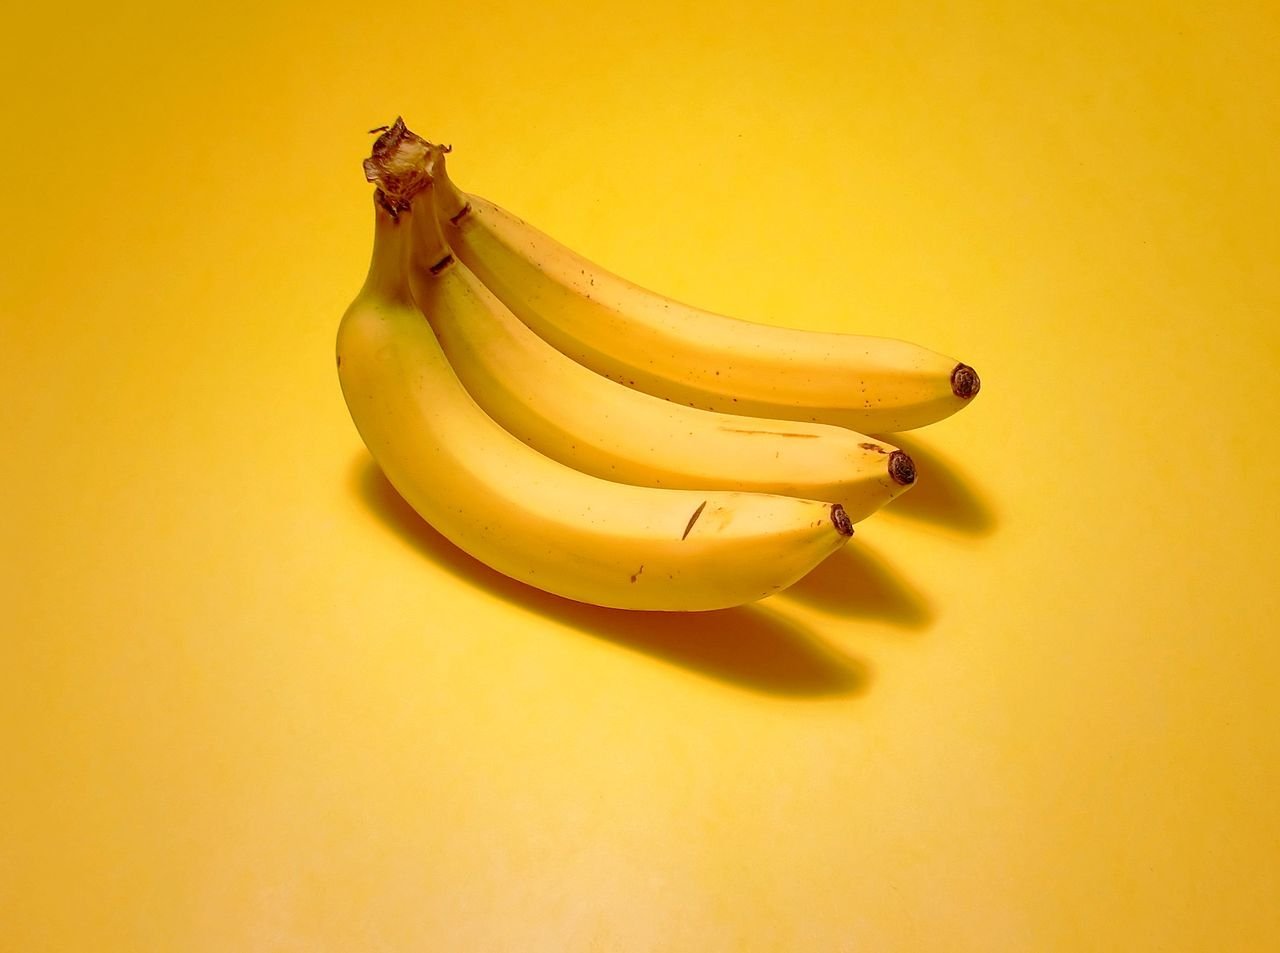 3 бананов в день